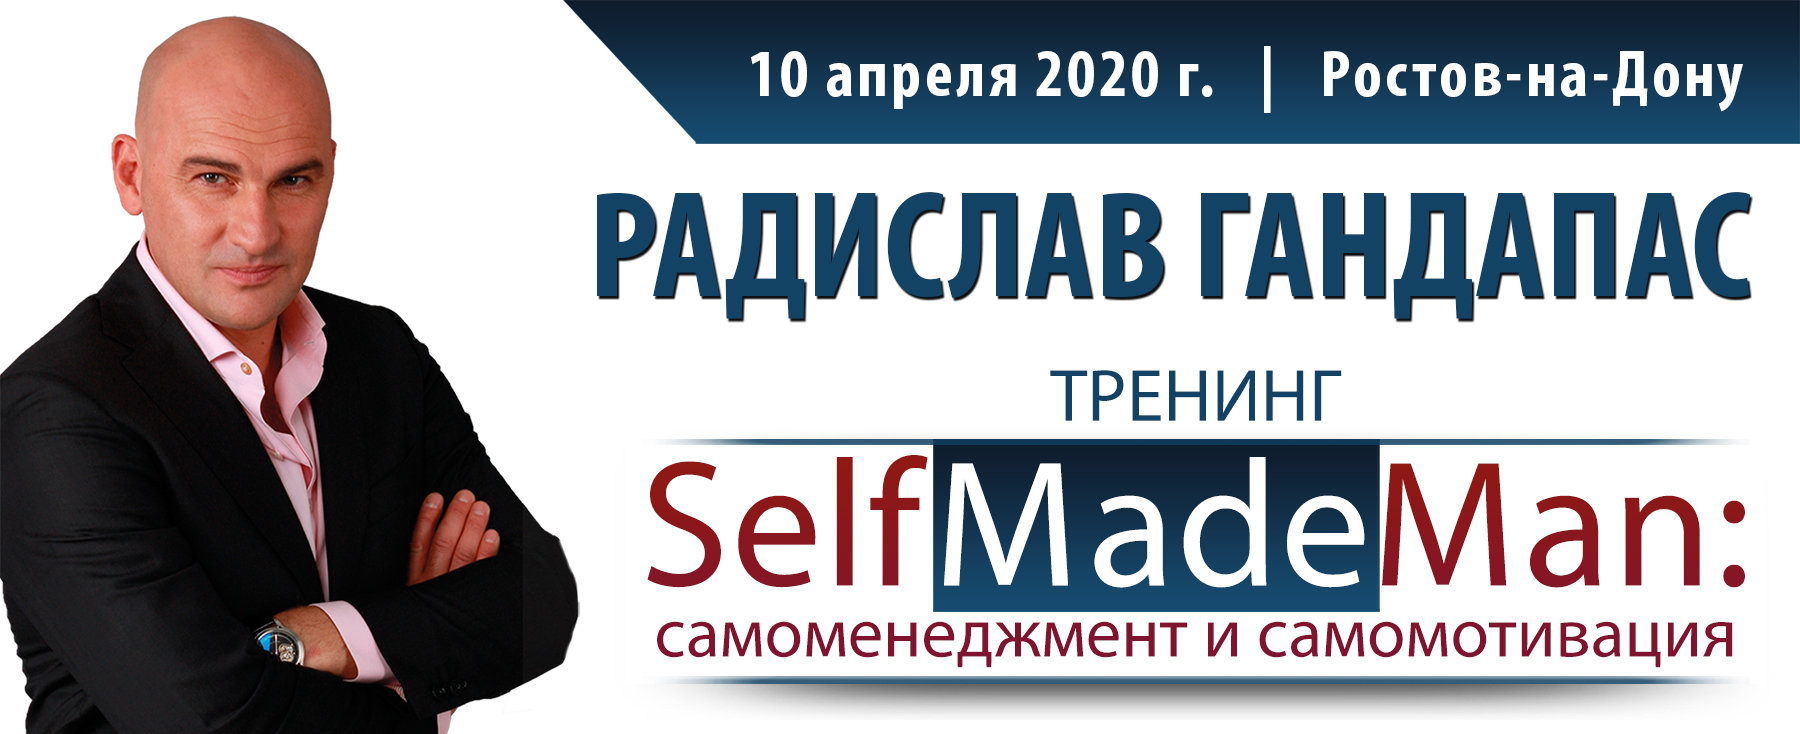 Получить максимальный успех в жизни и бизнесе, эффективно управляя собой: тренинг Радислава Гандапаса пройдет в апреле в Ростове 